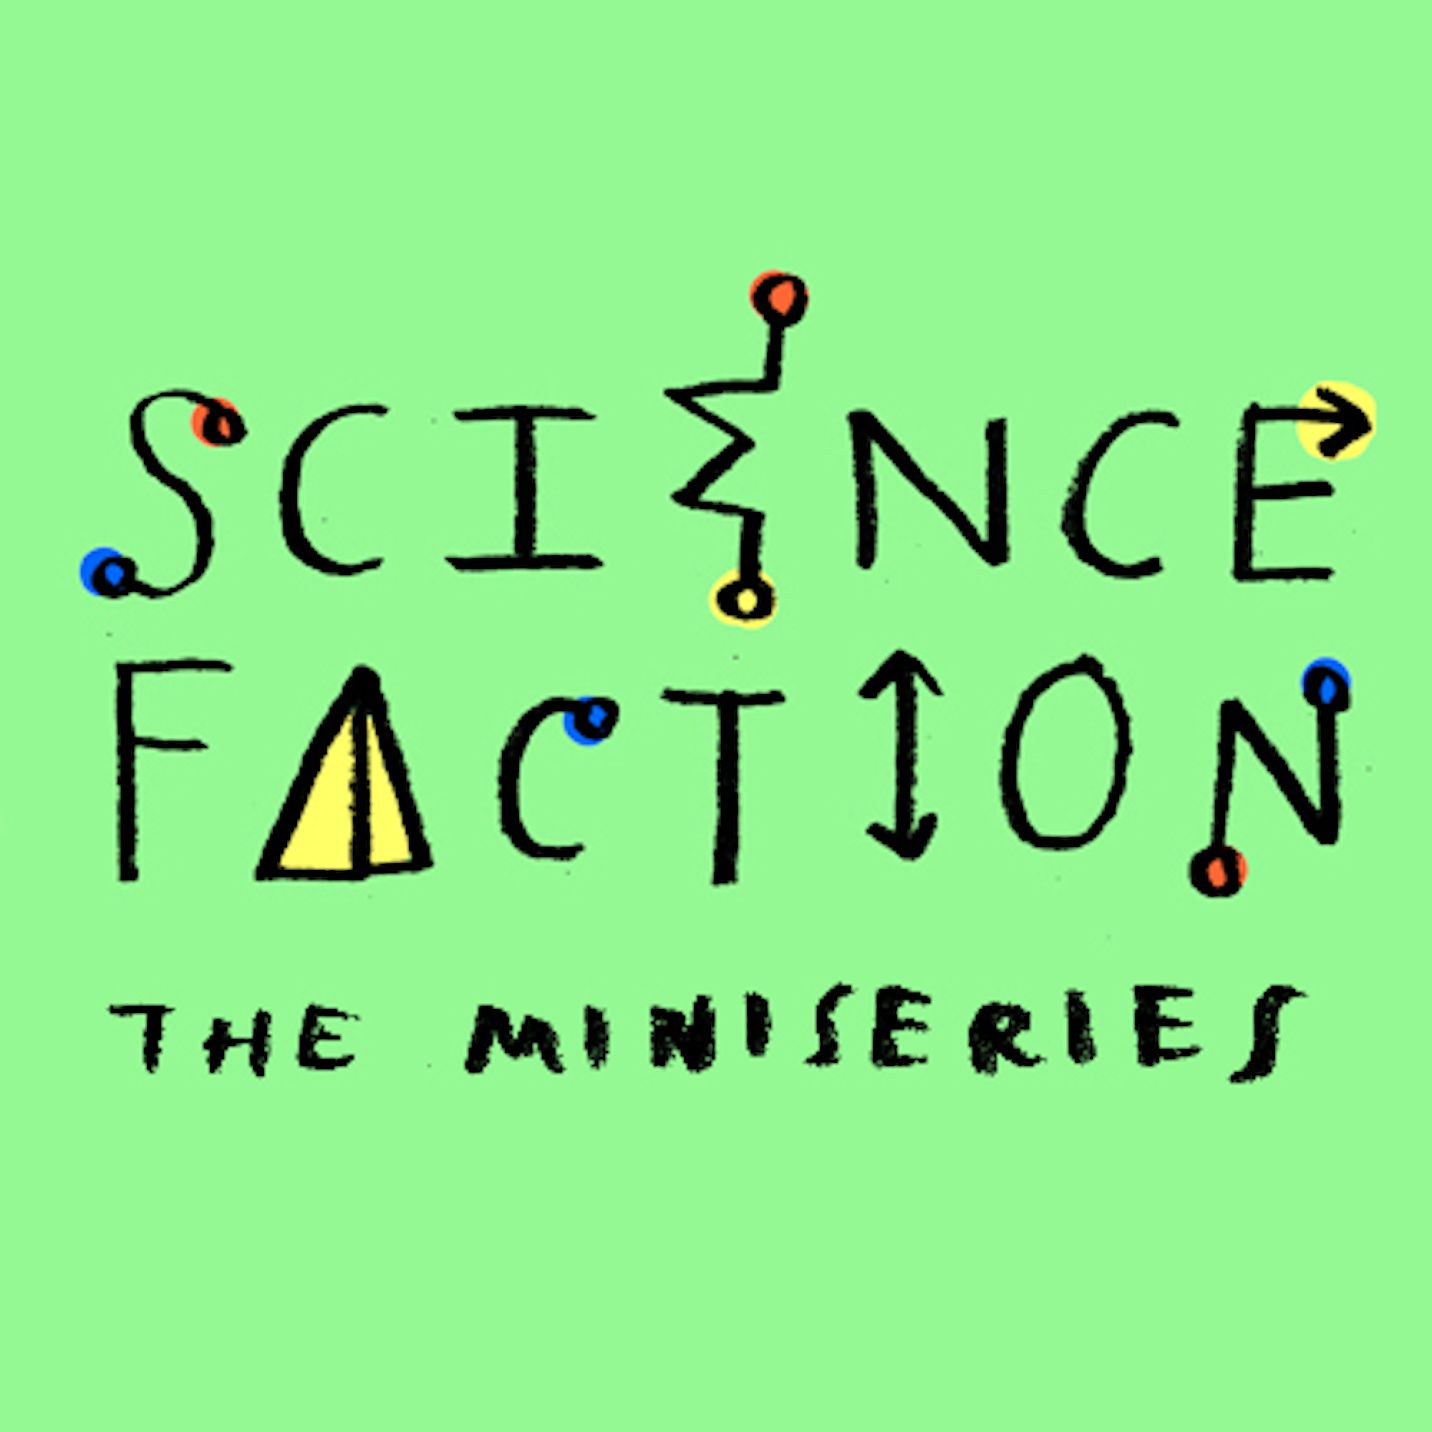 Science Faction Teaser